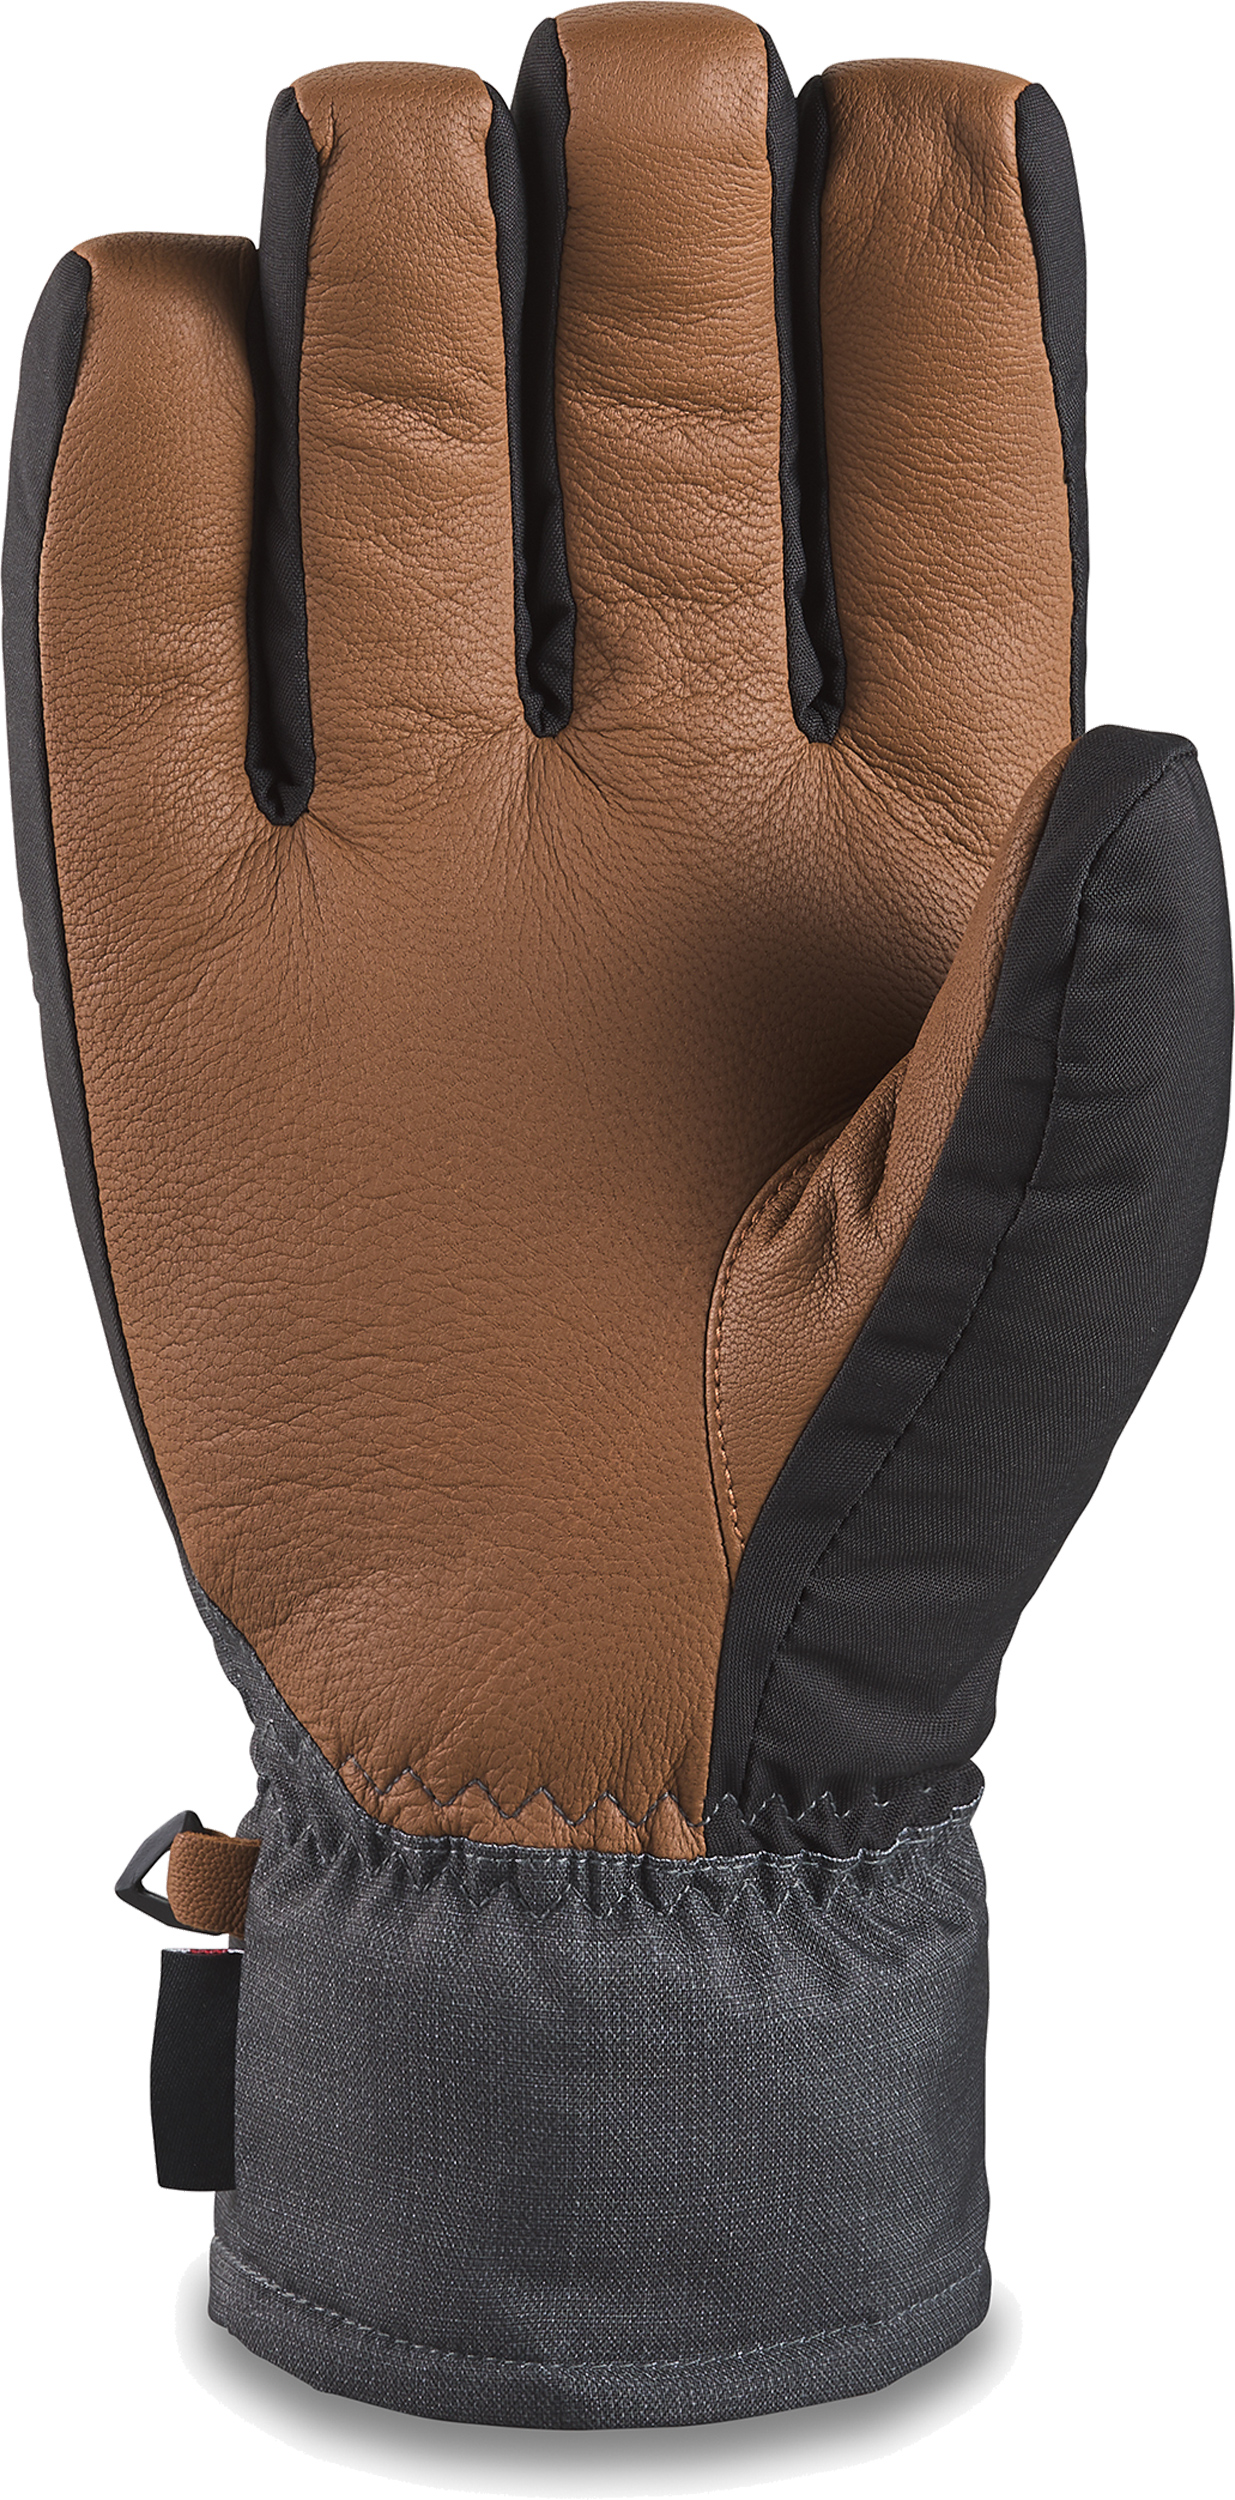 Details about   Dakine Charger Mitt Mittens & Liner Gloves Men's Large Black 